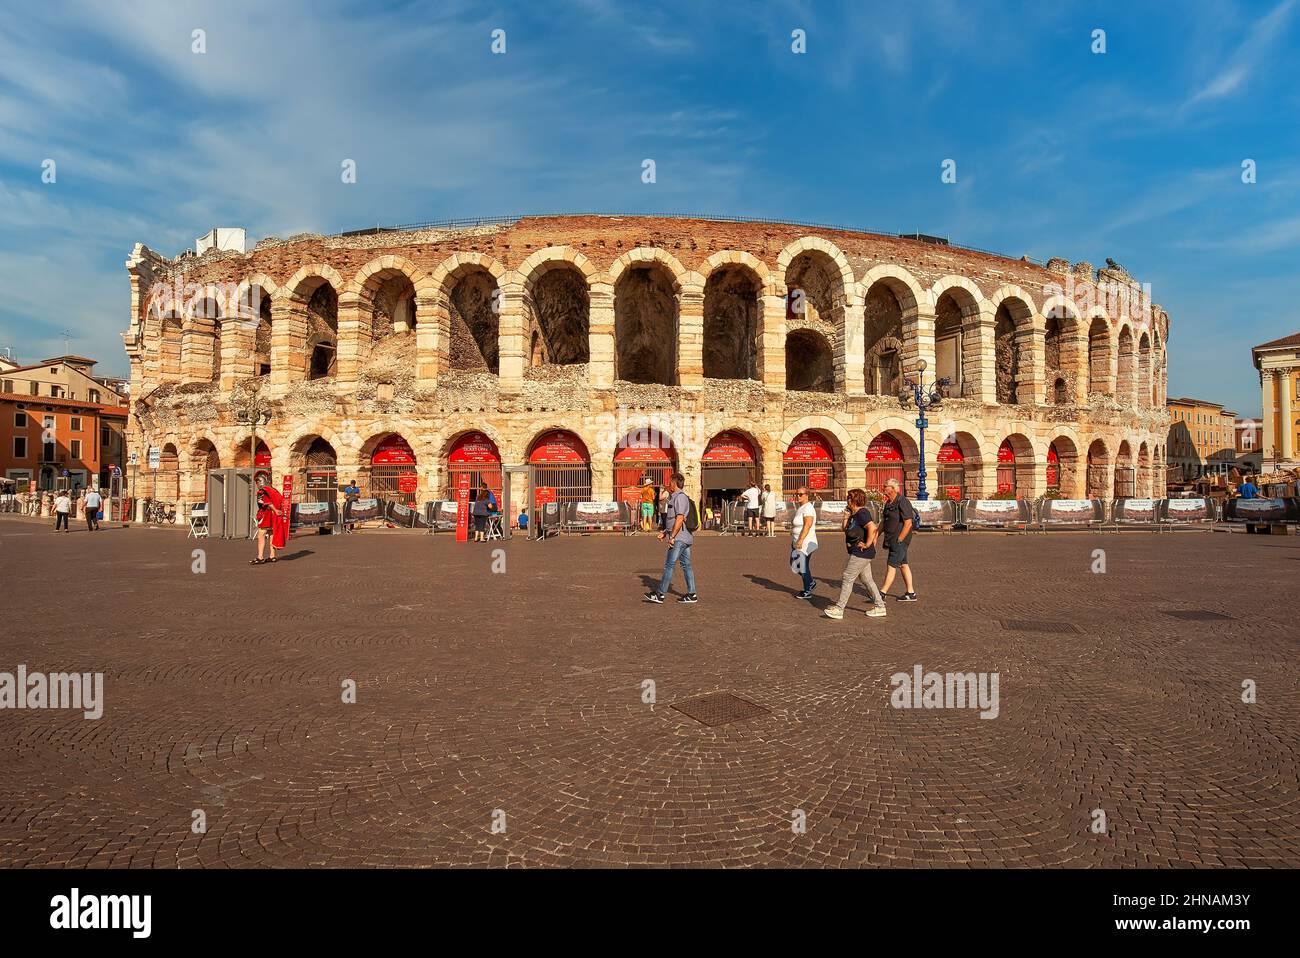 VÉRONE, ITALIE - 20th juillet 2019 : vue sur l'arène de Vérone (Arena di Verona), attraction touristique populaire, personnes marchant Banque D'Images